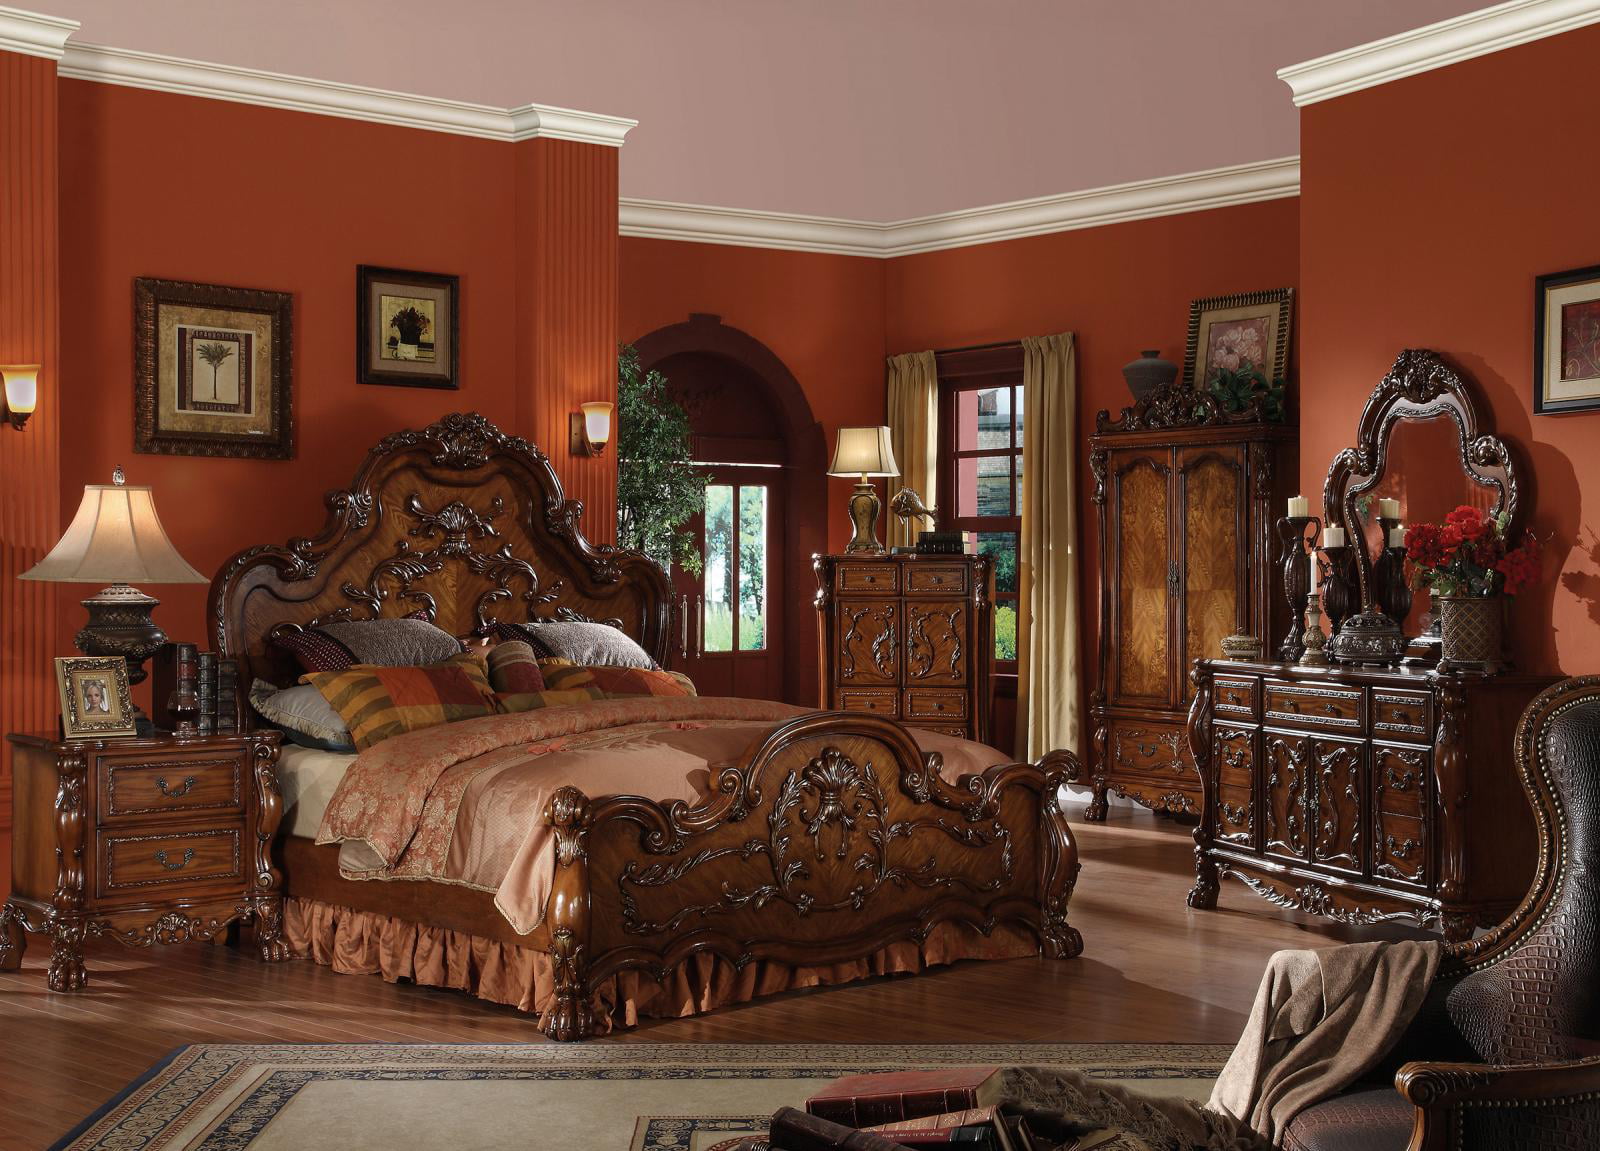 Cherry Oak King Bedroom Set 5pcs Carved, Oak Bedroom Sets King Size Beds